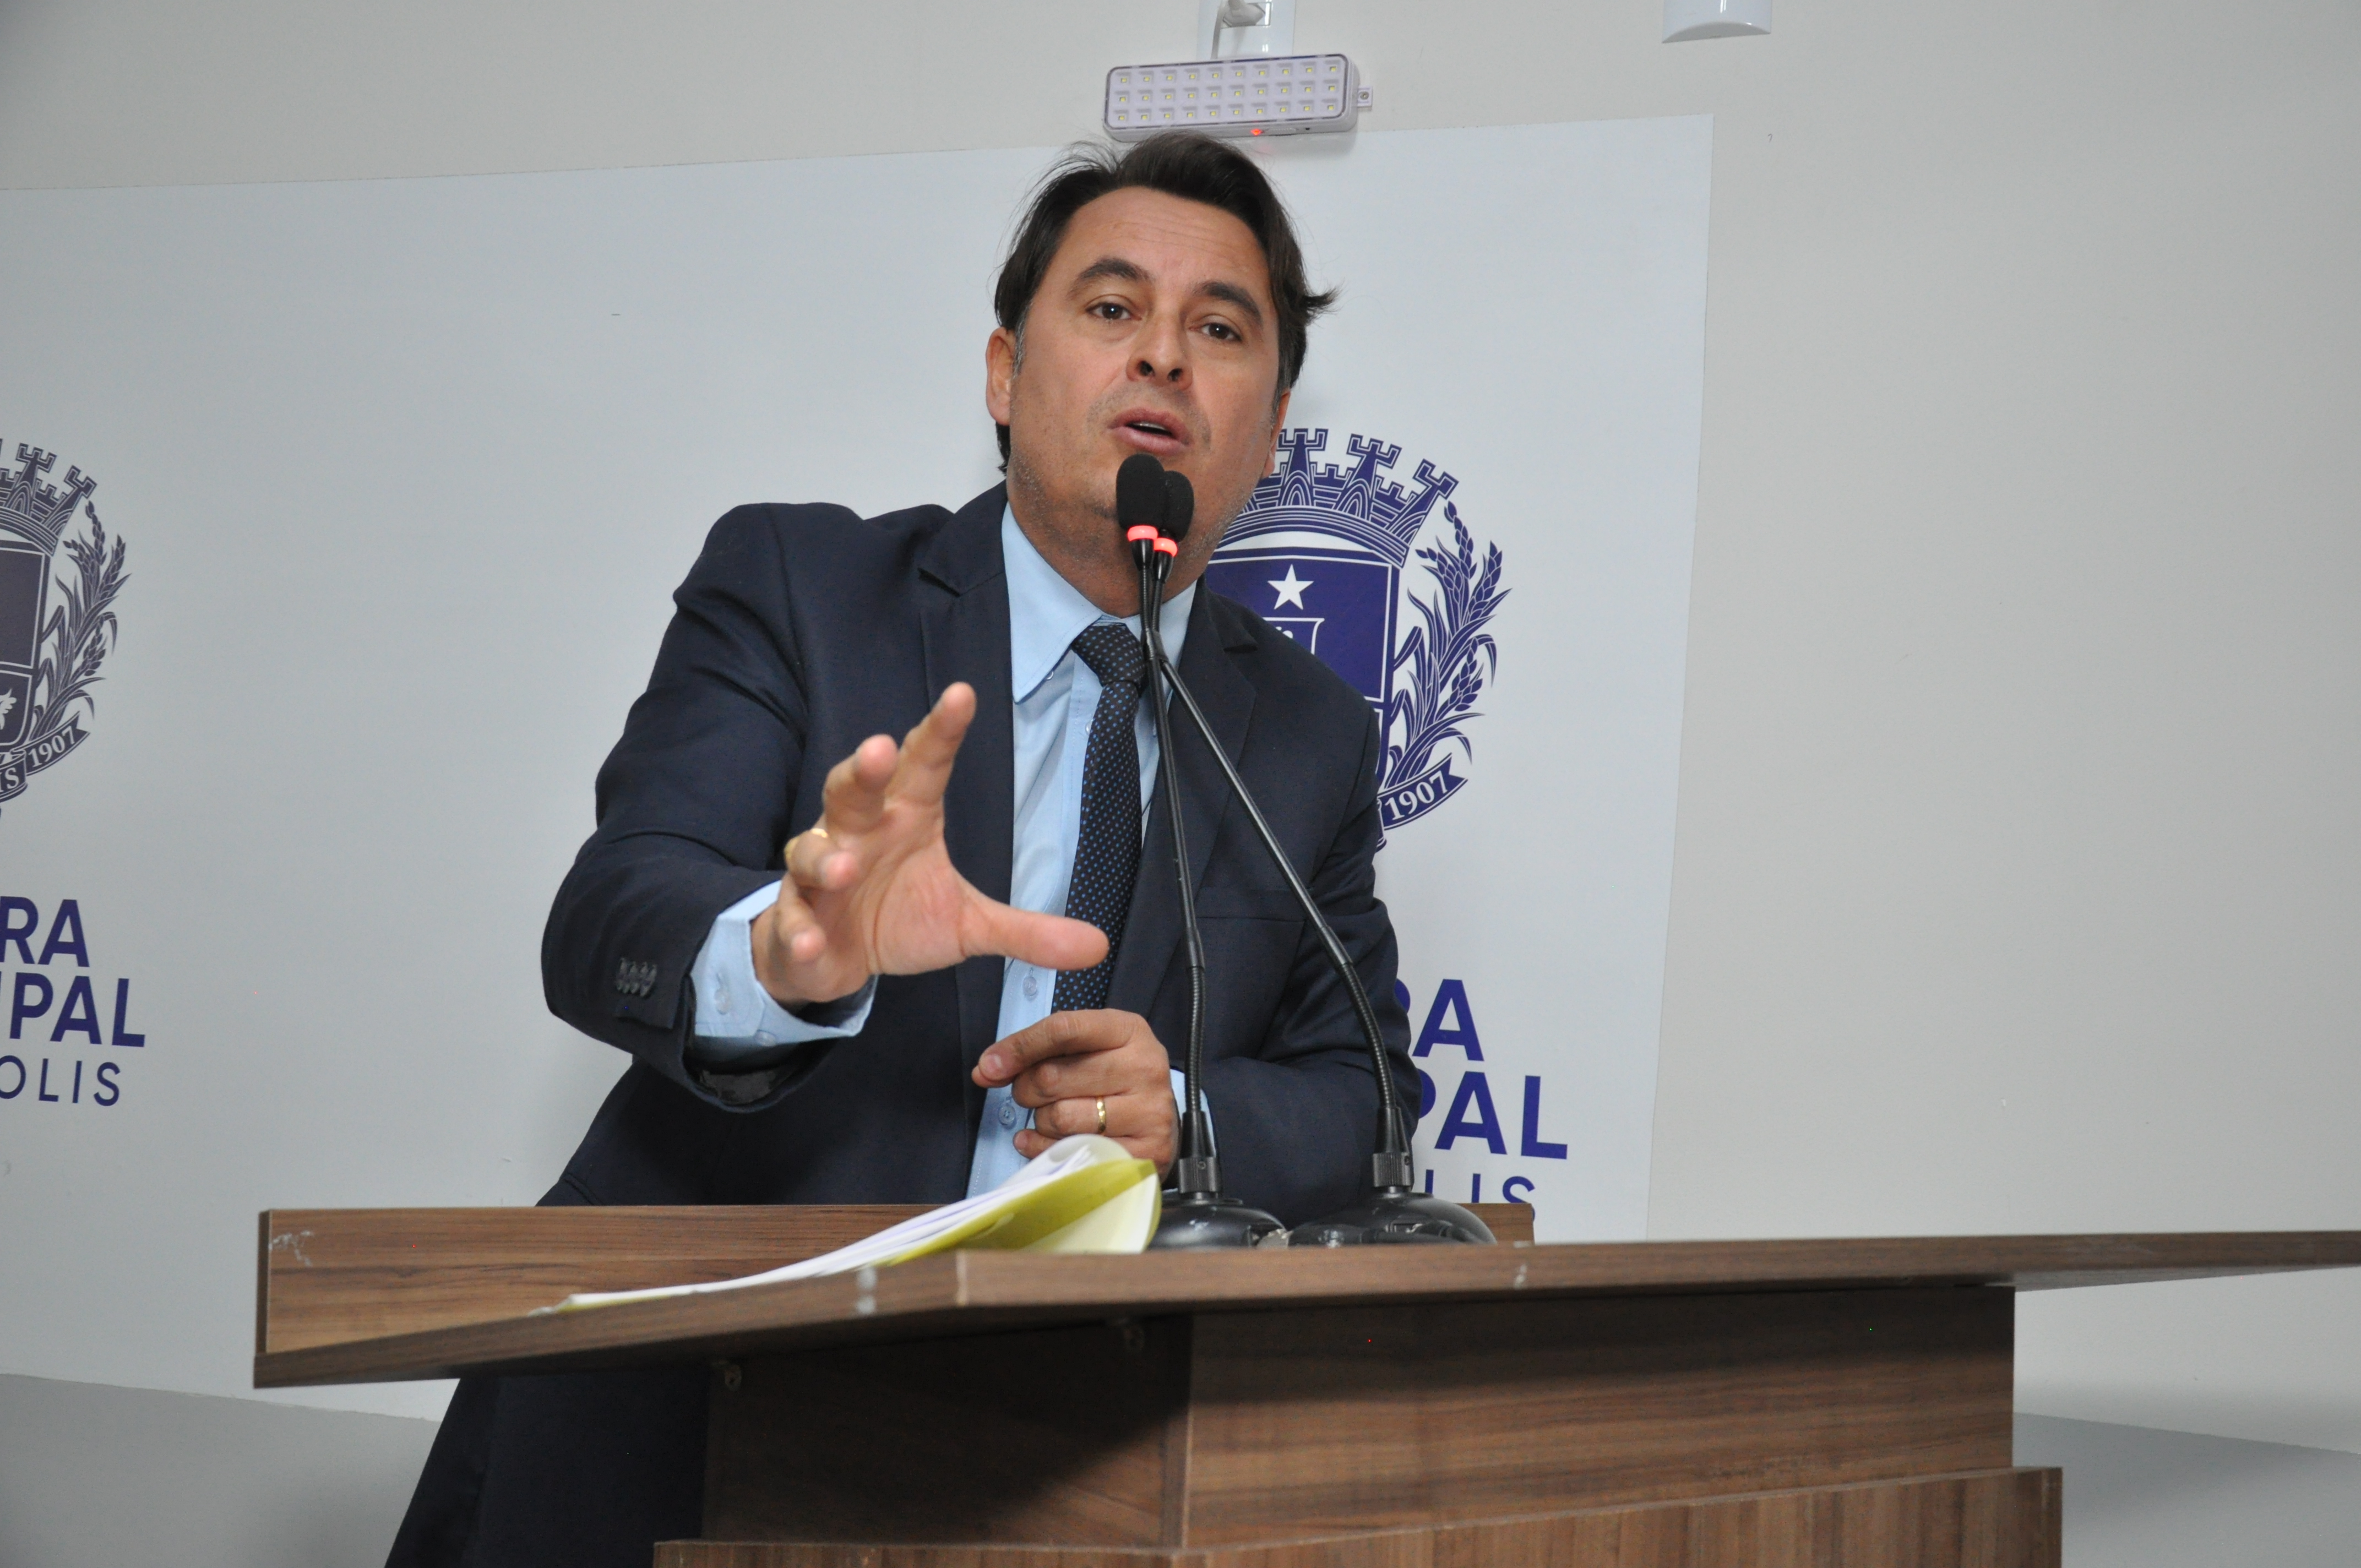 Jean Carlos explica que projeto de lei garante remédio ao cidadão e evita judicialização na Saúde